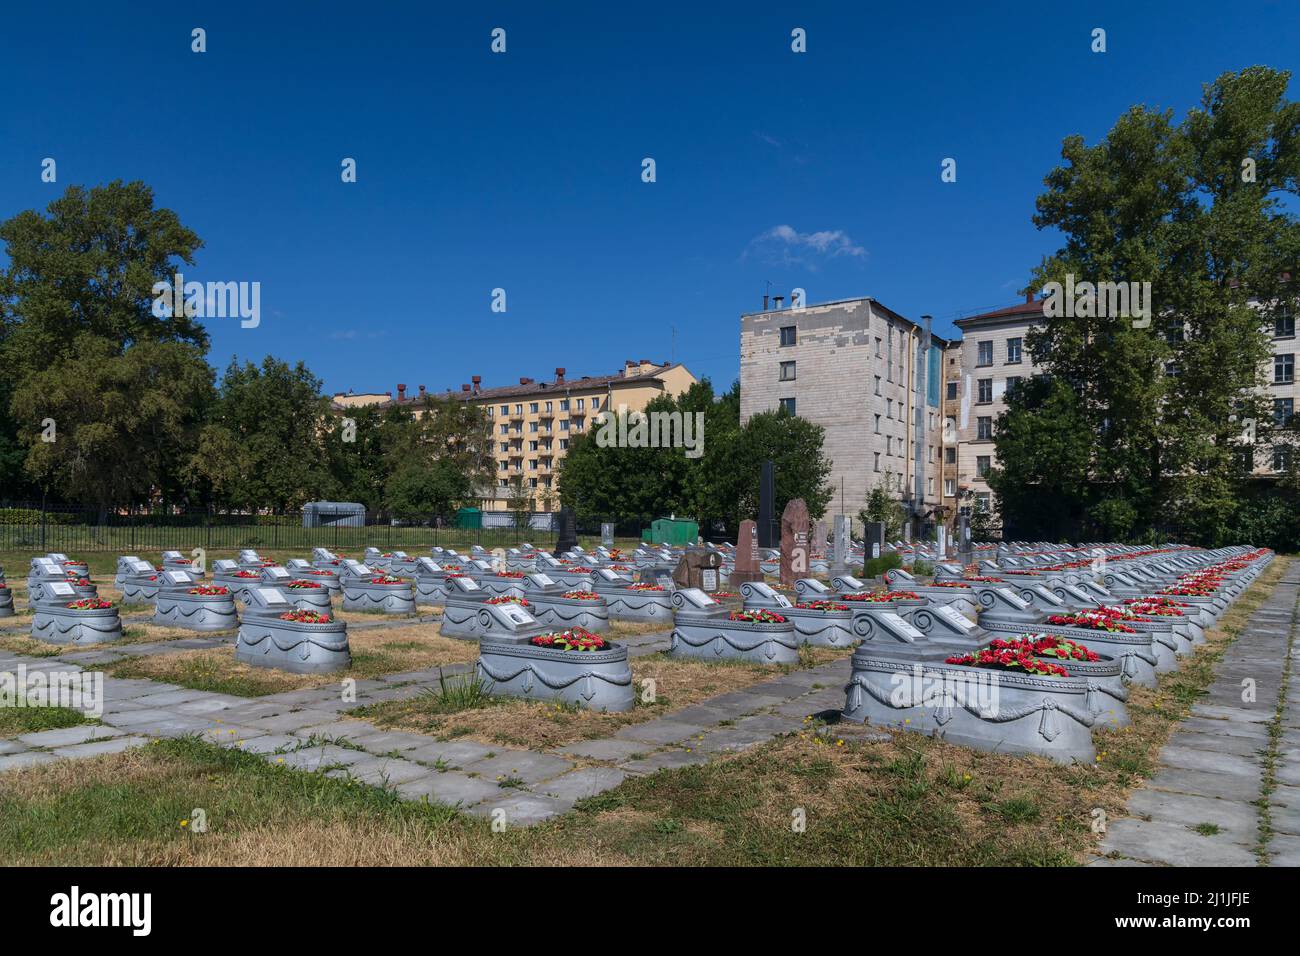 Sankt Petersburg, Russland - 18. Juli 2021: Militärischer Gedenkfriedhof des Zweiten Weltkriegs während der Belagerung von Leningrad in der Nähe von Wohngebäuden Stockfoto